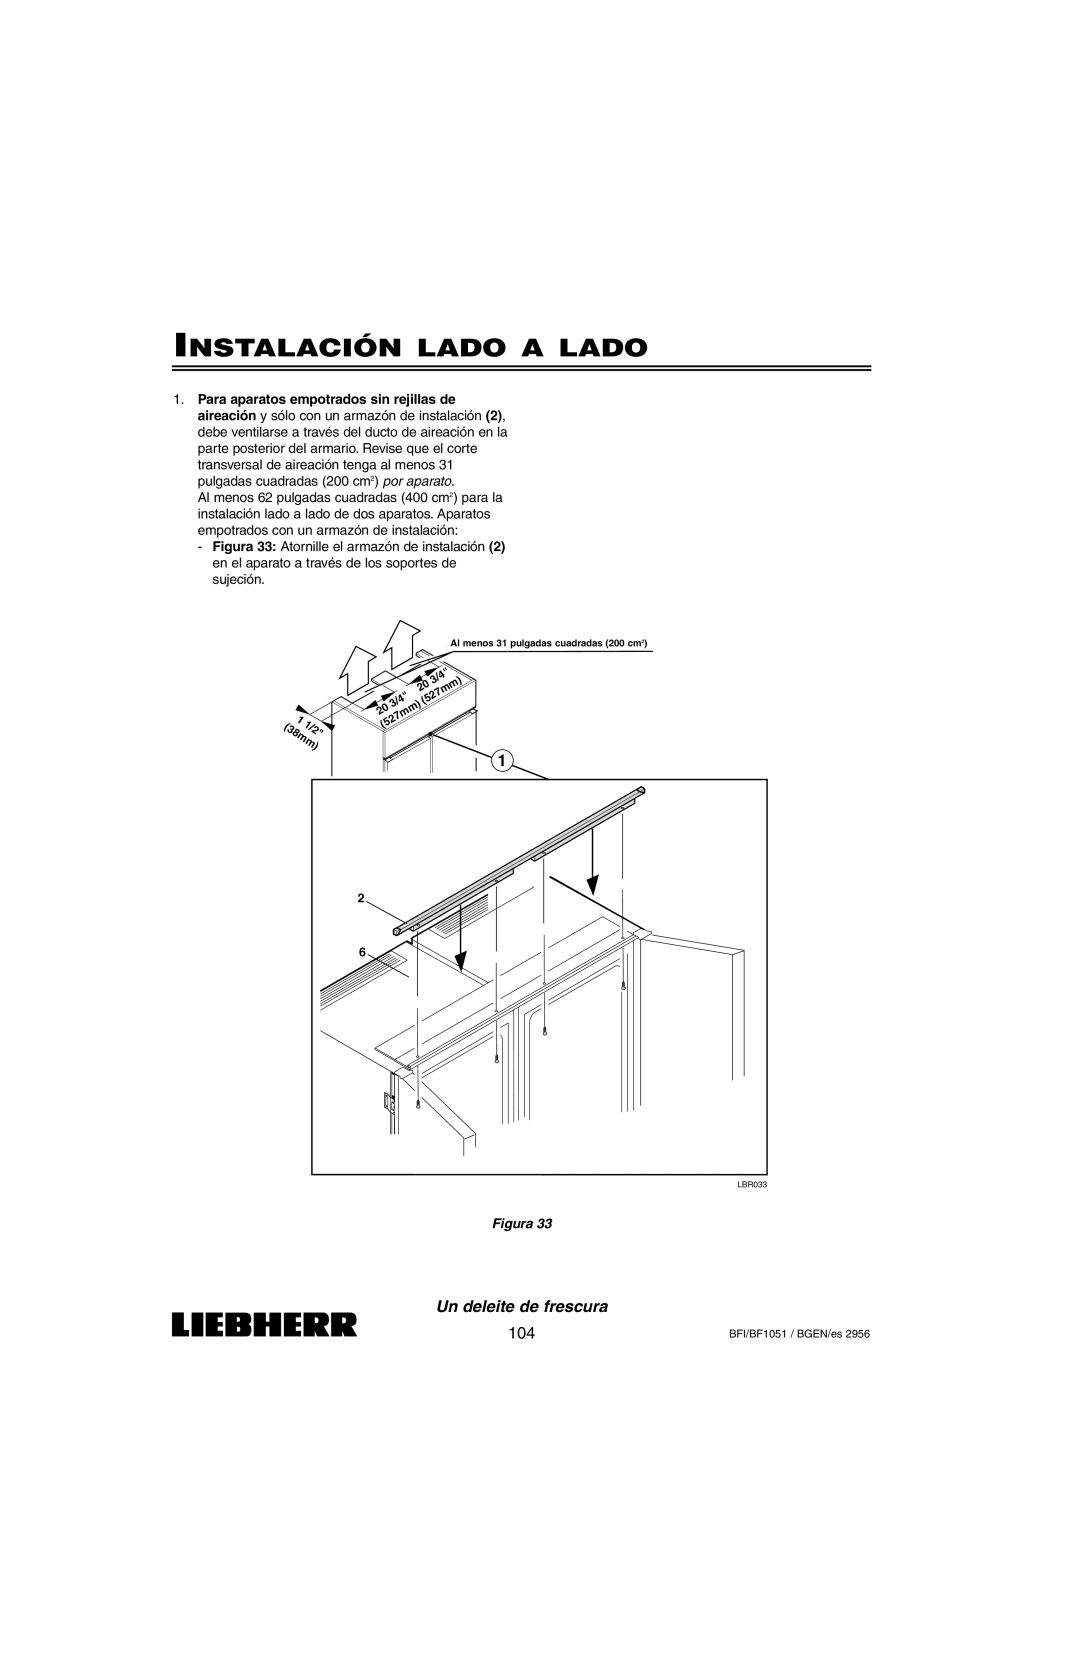 Liebherr BFI1051, BF1051 installation instructions Instalación Lado A Lado, Un deleite de frescura, Figura 